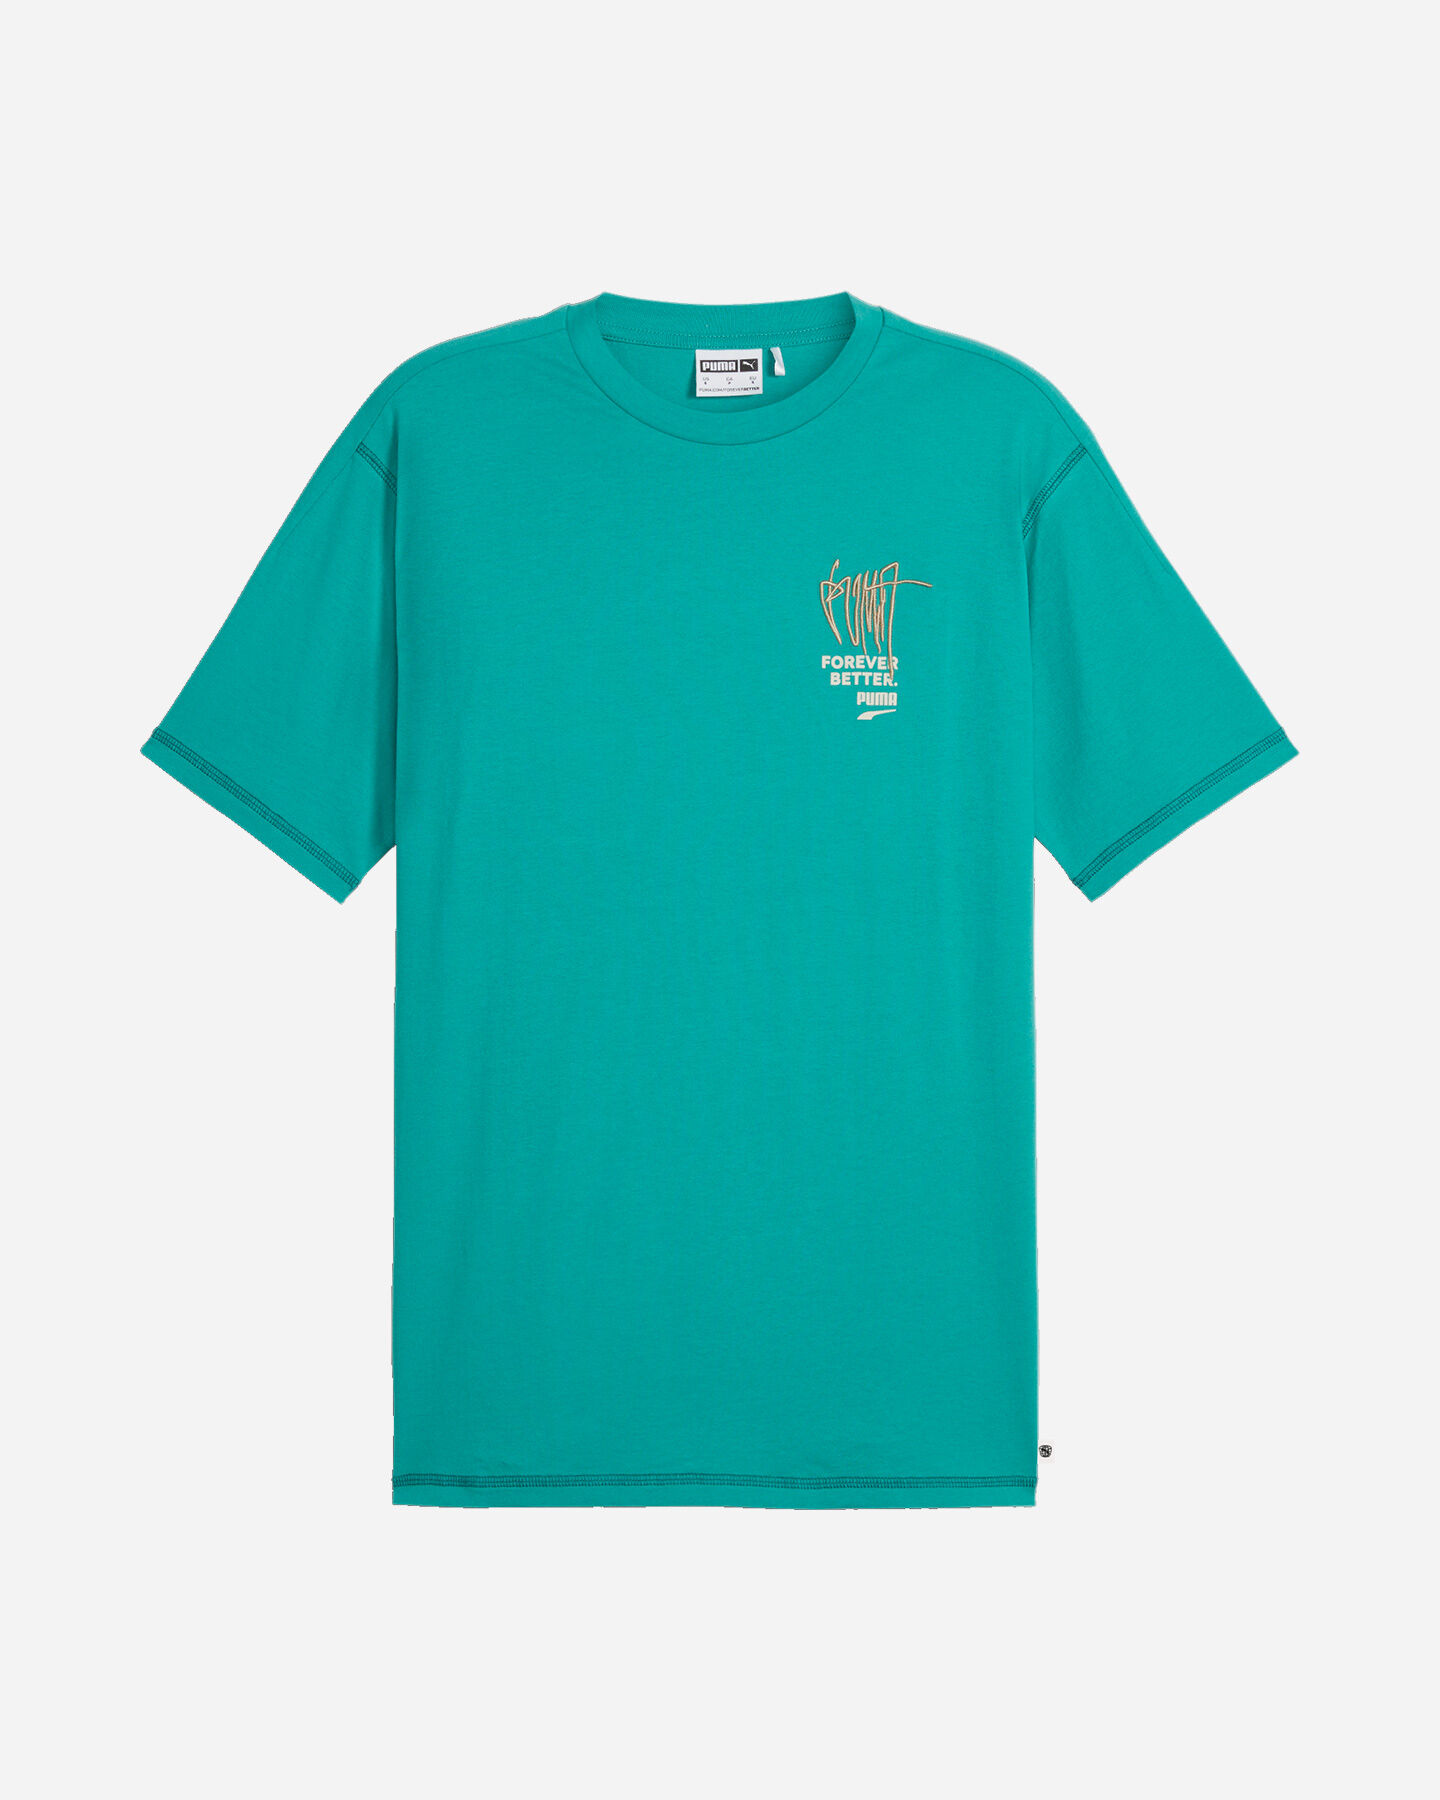  T-Shirt PUMA BETTER FUTURE M S5663853|88|S scatto 0